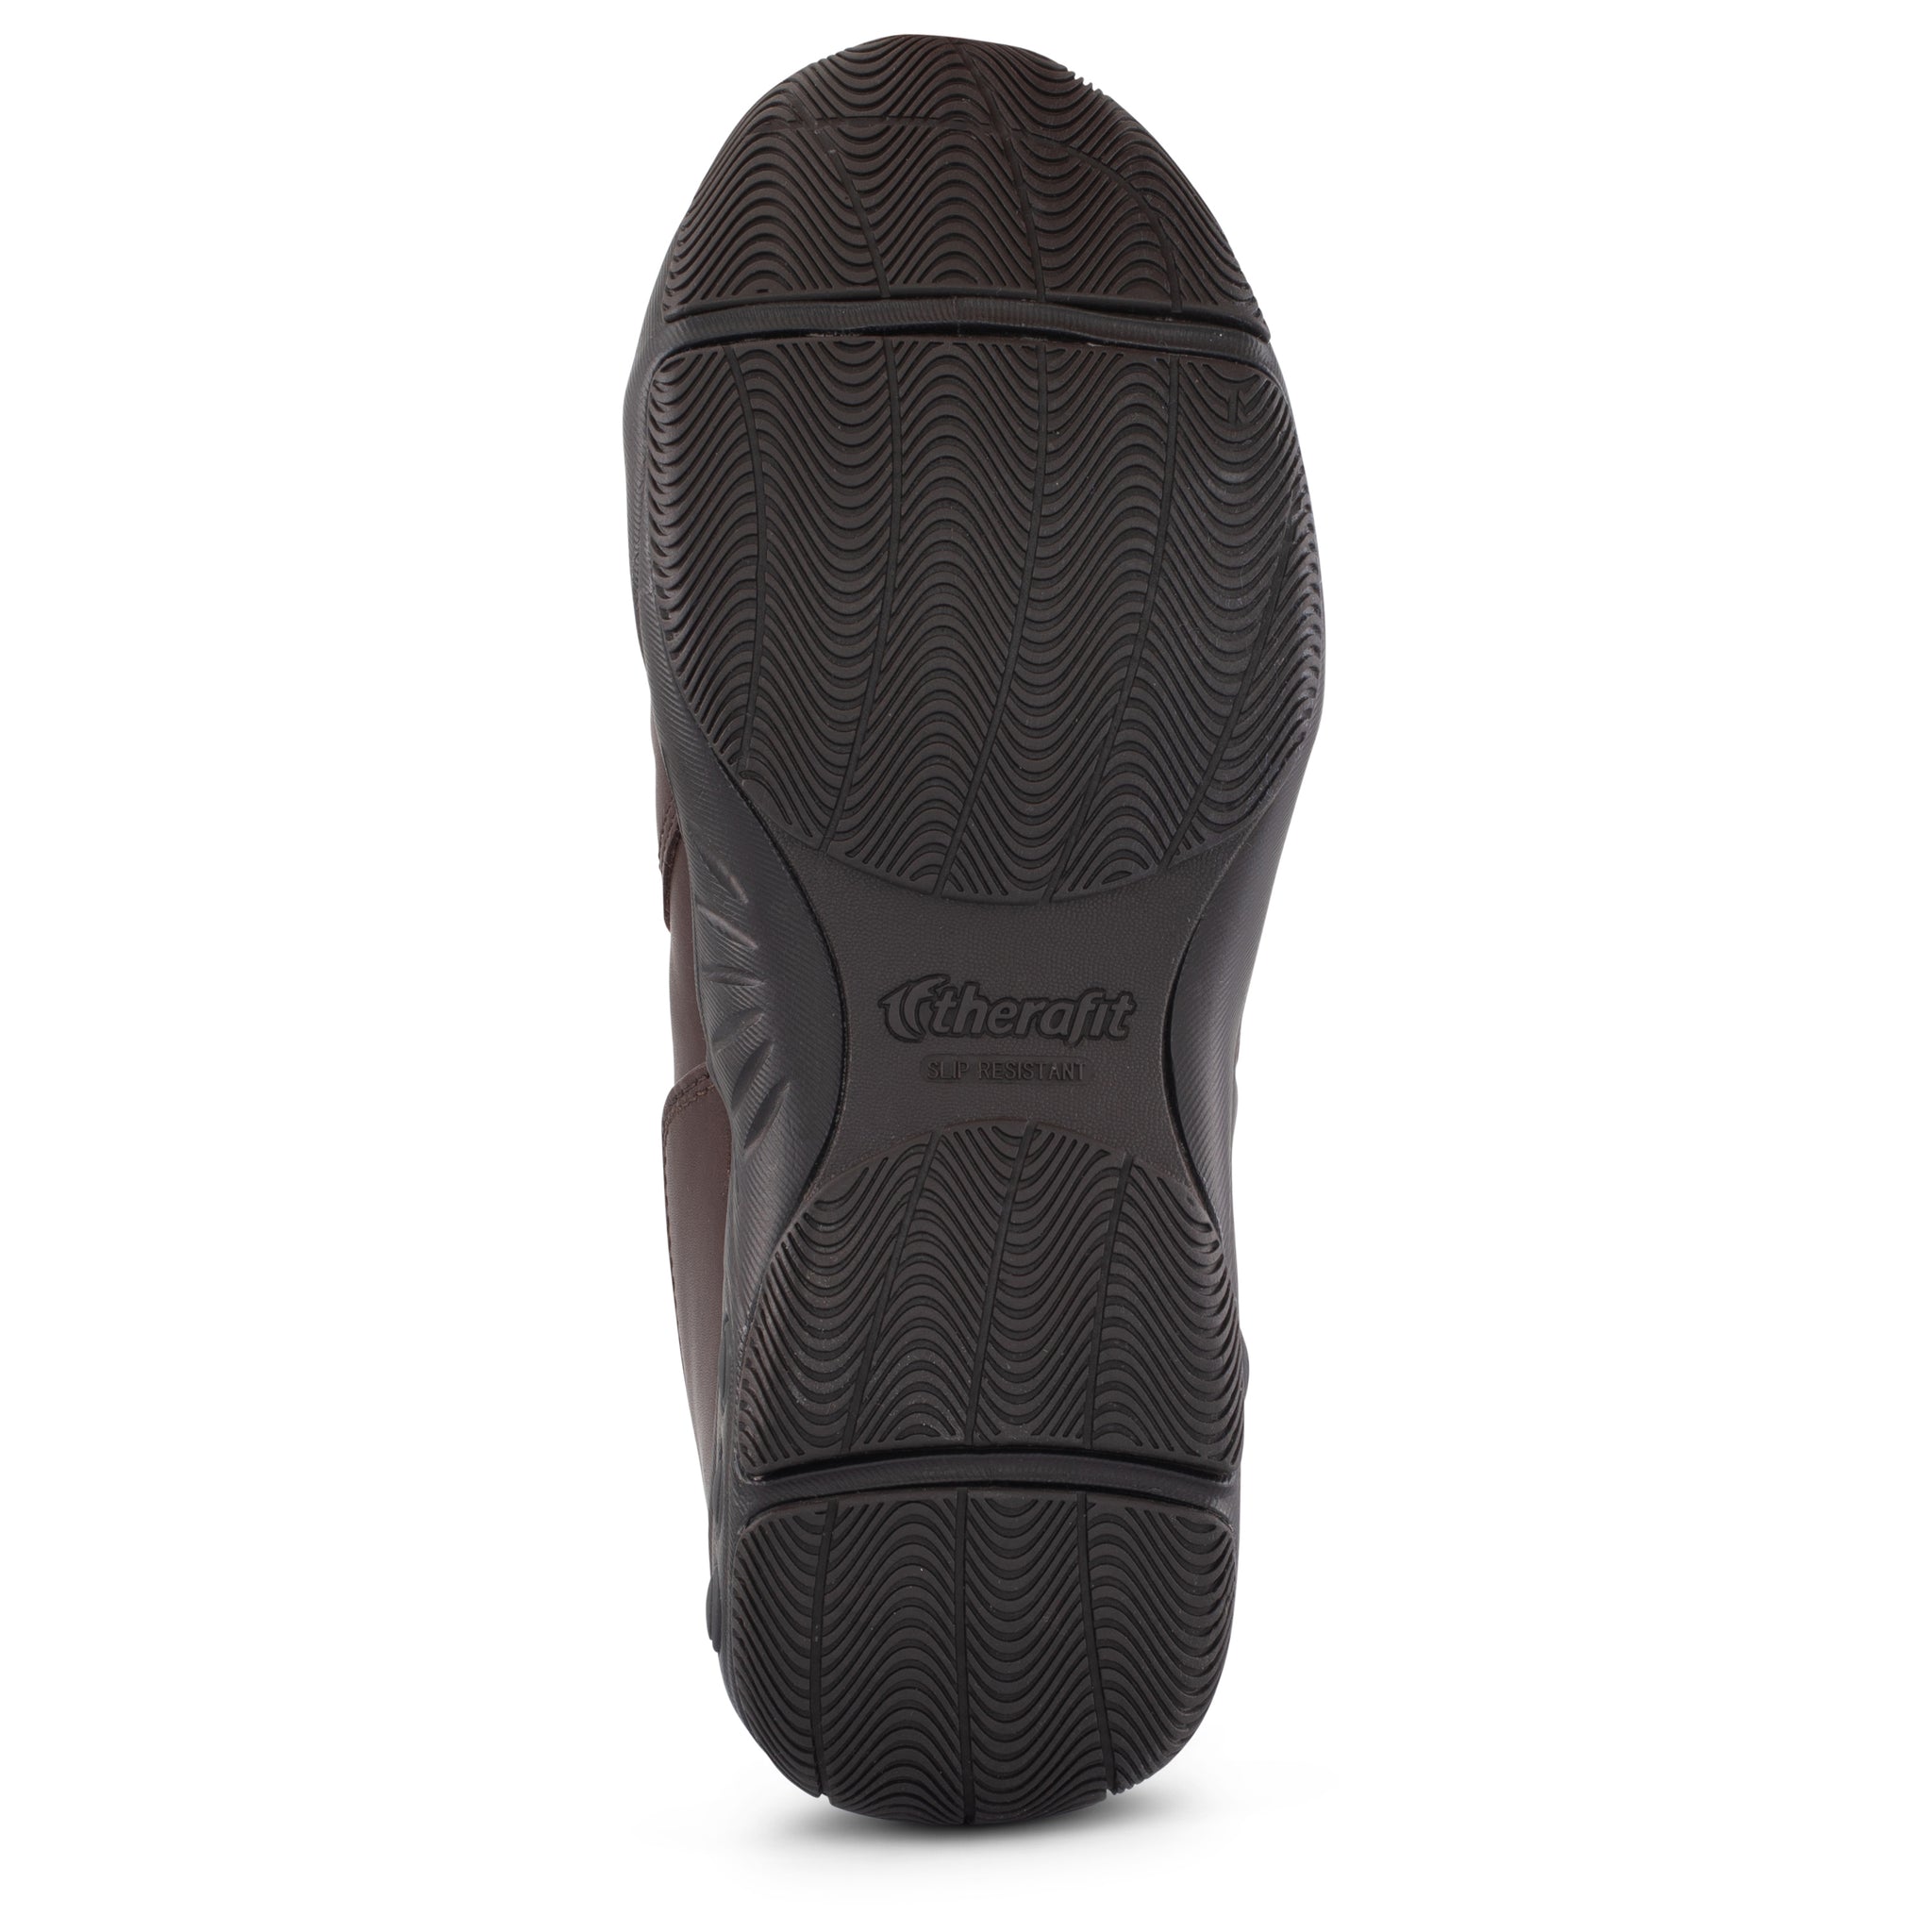 Black 7.5 Men's Slip-Resistant Hook and Loop Work Shoes